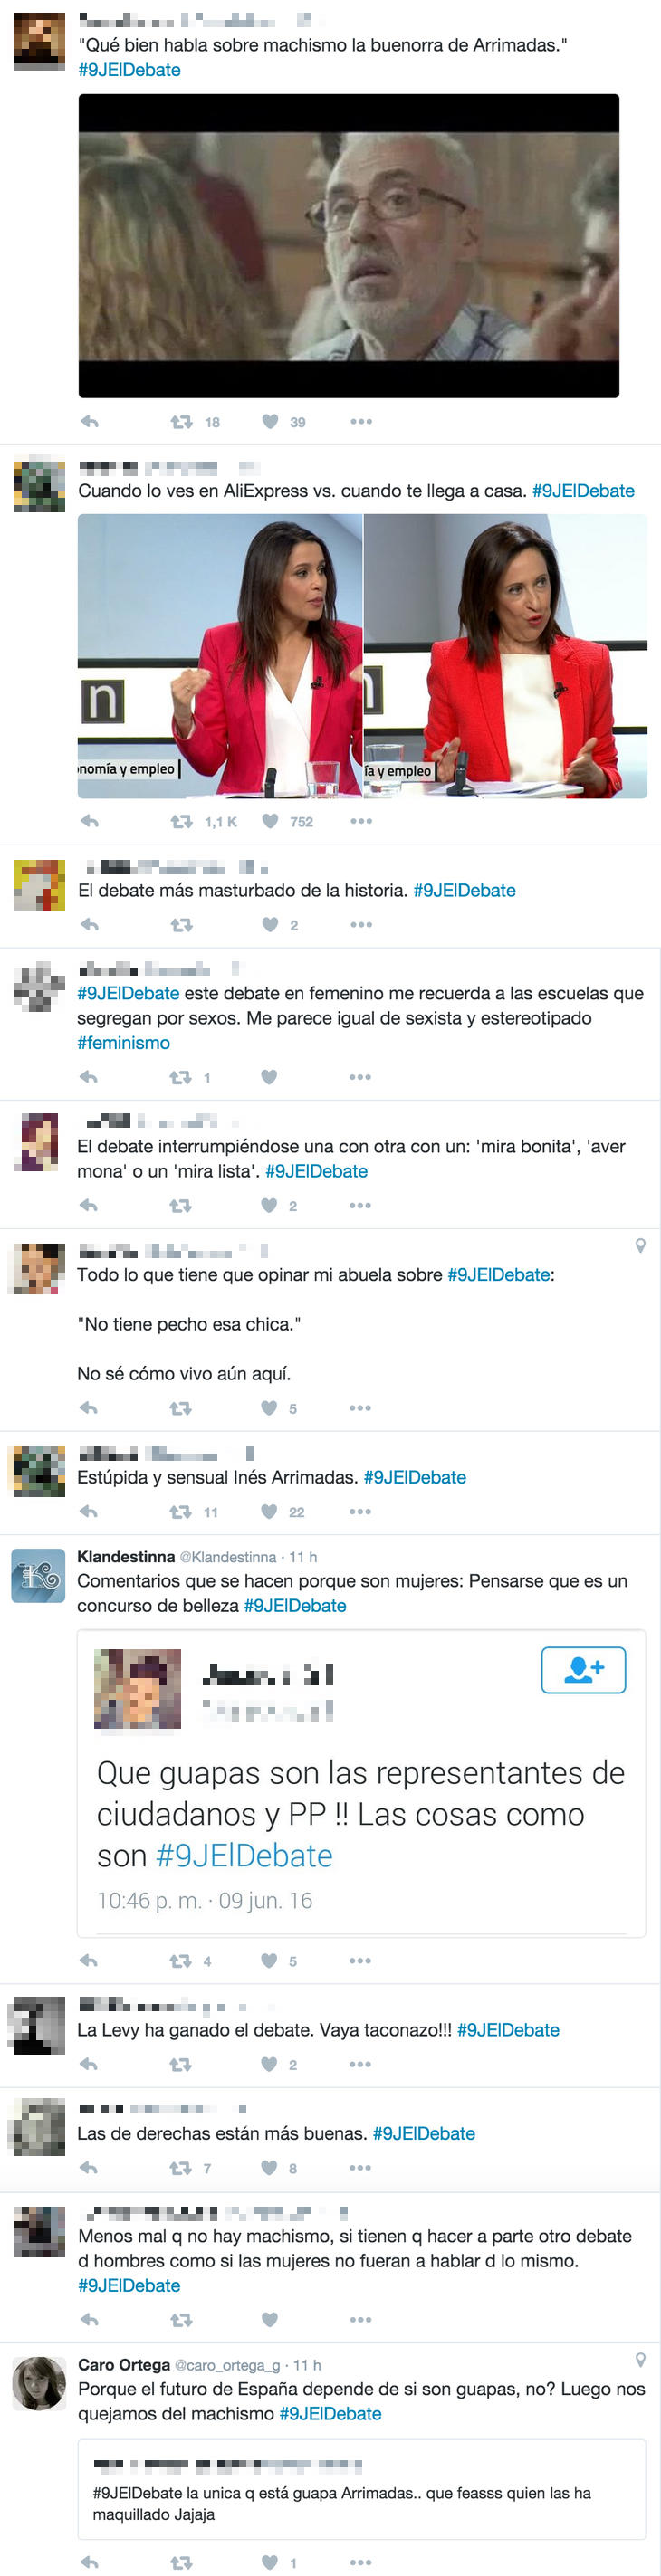 Los comentarios machistas del debate entre mujeres de Antena 3